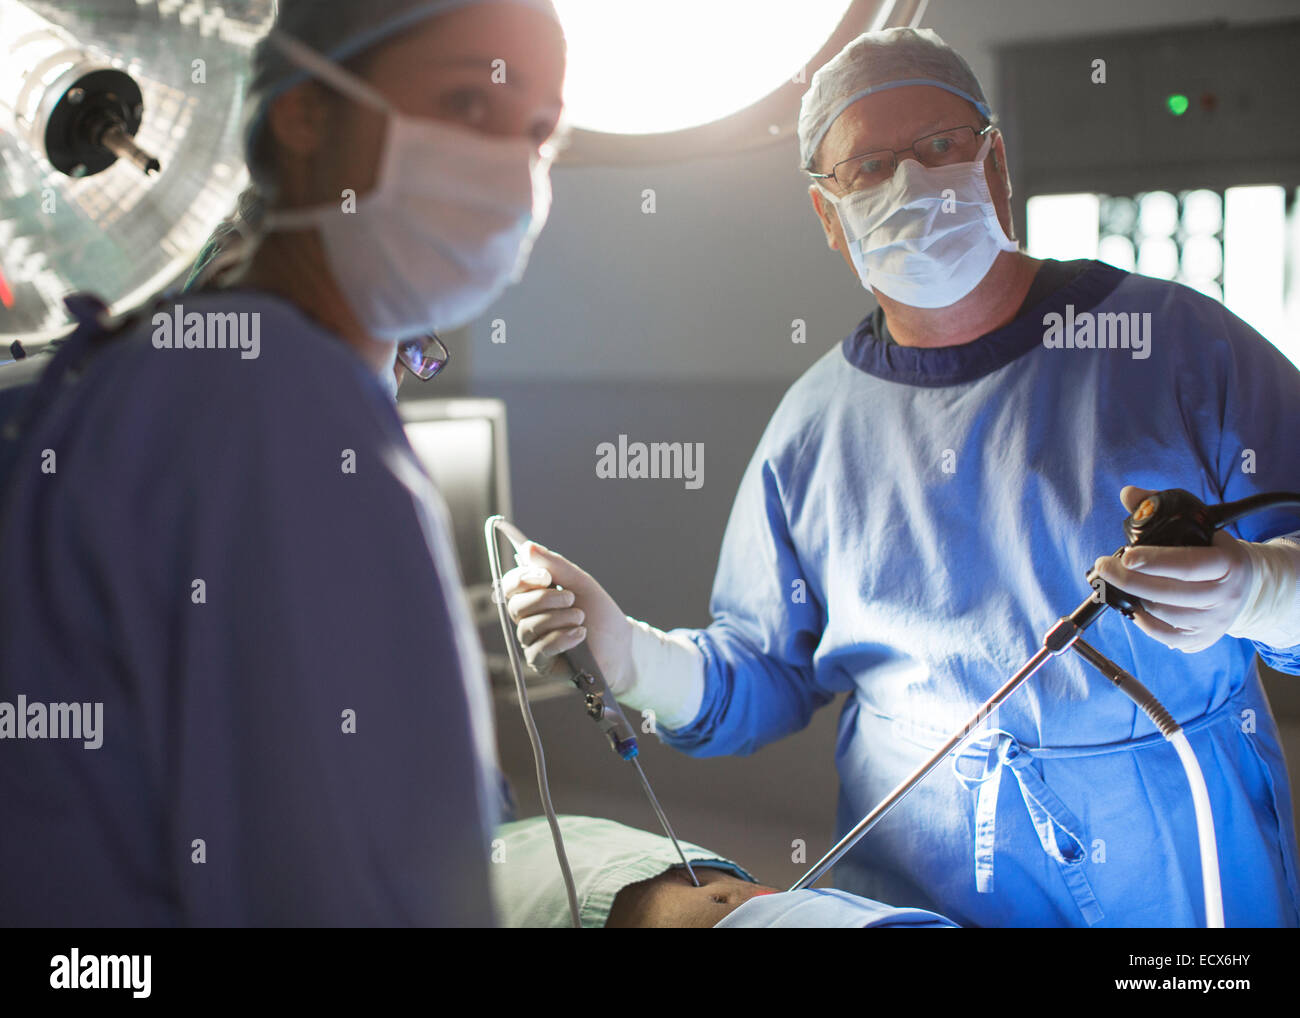 Männliche und weibliche Ärzte laparoskopische Chirurgie im Operationssaal Stockfoto